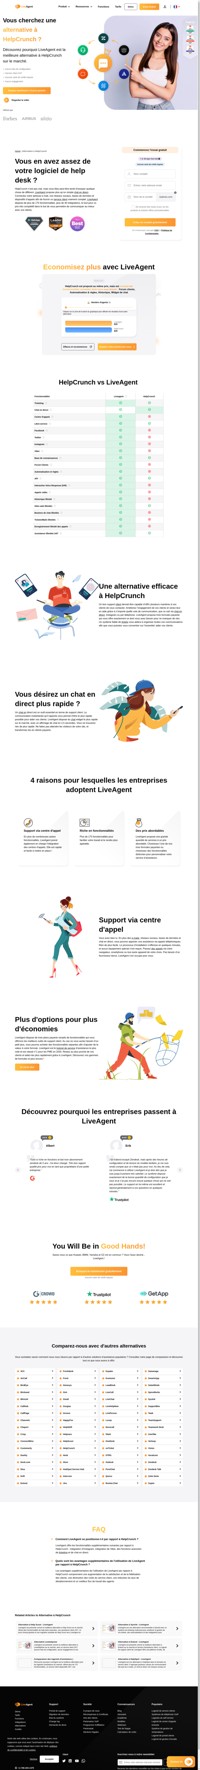 LiveAgent propose plus de 175 fonctionnalités et 40 intégrations, le tout pour un prix très intéressant. Découvrez pourquoi vous devriez passer de HelpCrunch à LiveAgent.